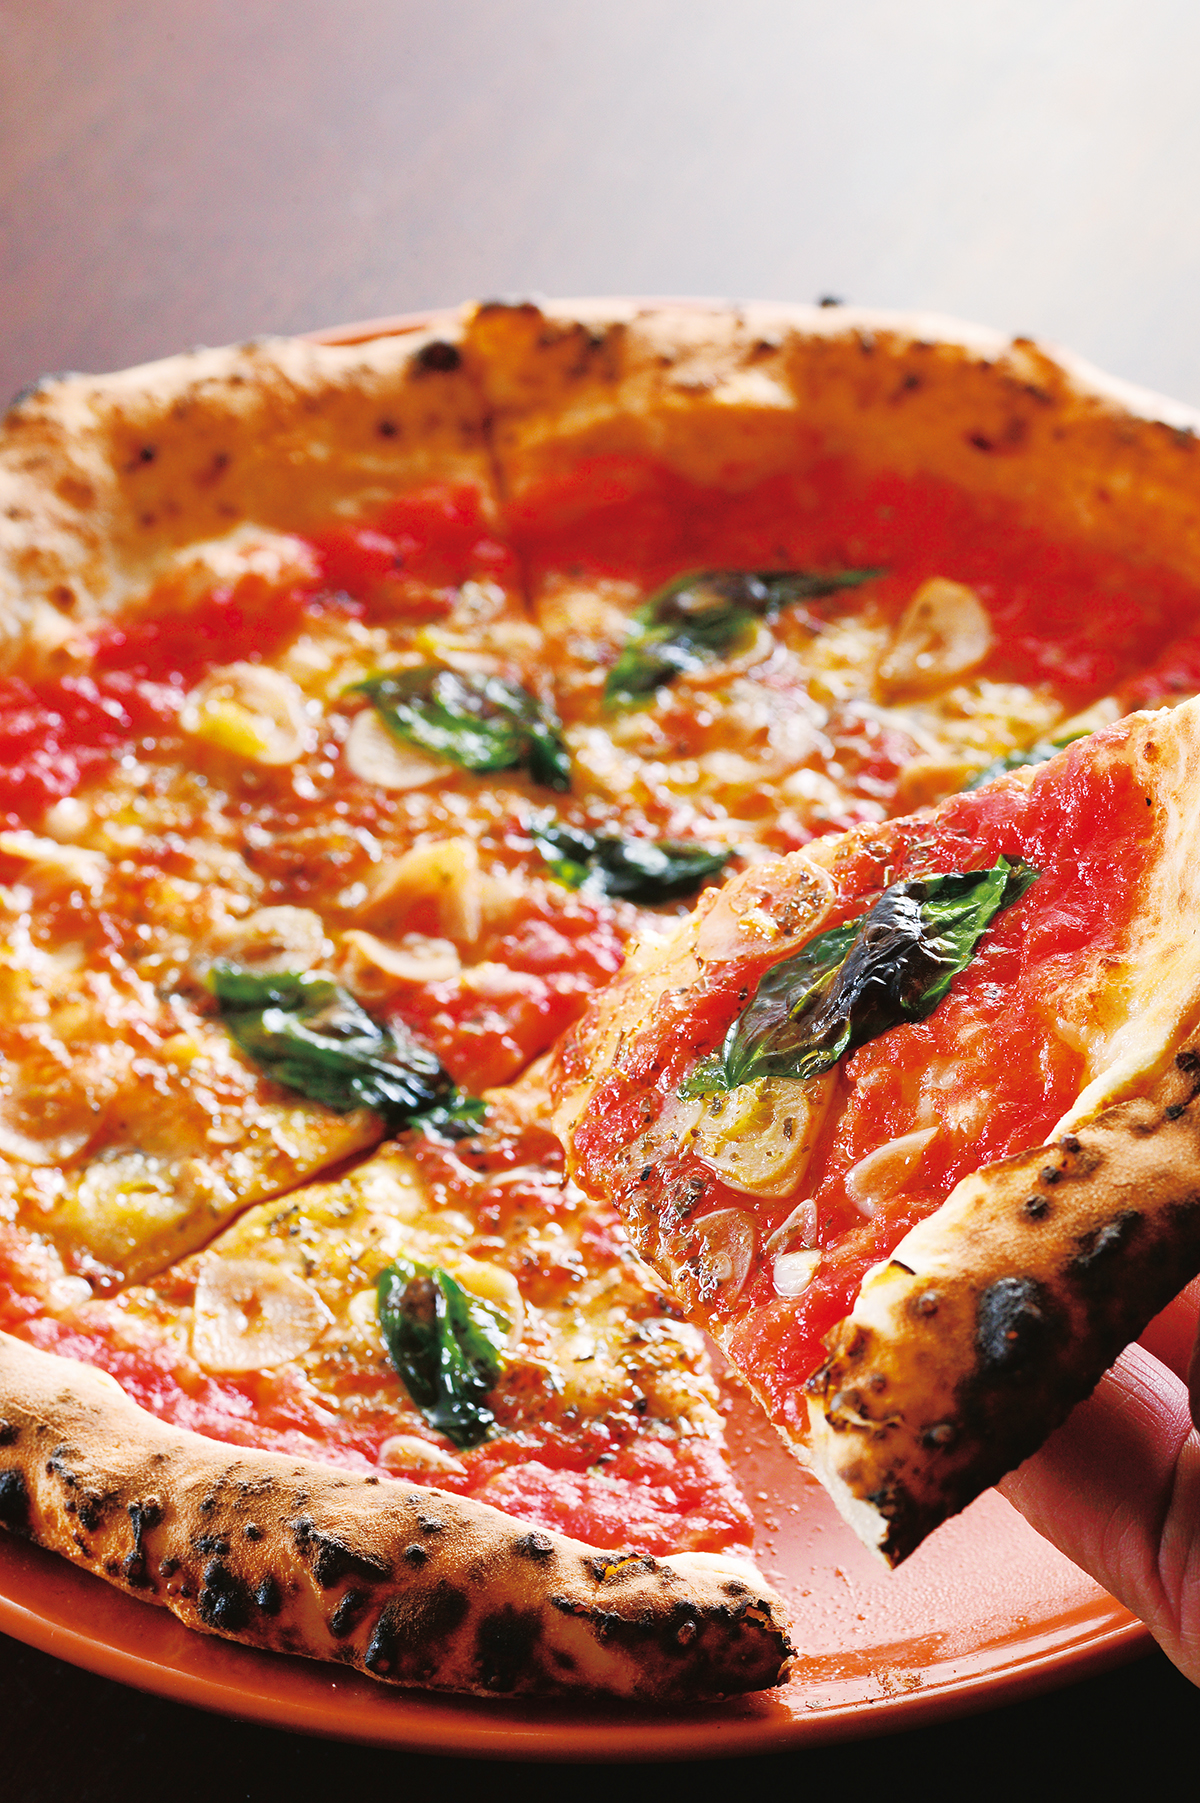 マリナーラ1000円<br />
トマトソースにニンニク、オレガノの香りが食欲を誘う。「シンプルイズベスト」とはこのピッツァのためにある言葉！